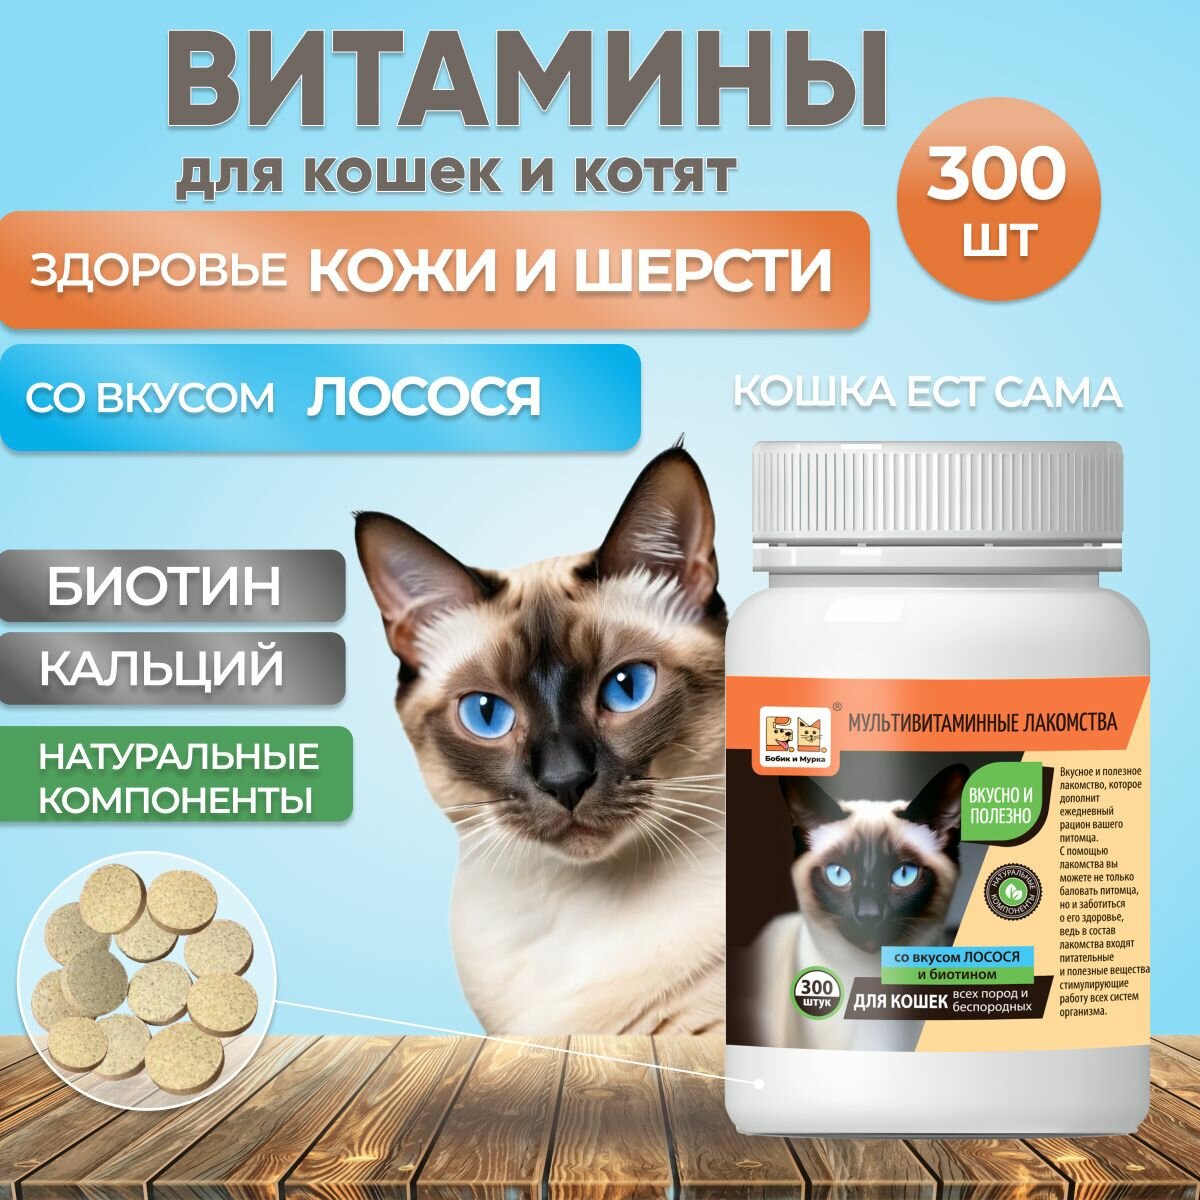 Витаминные лакомства для кошек со вкусом Лосося 300 шт